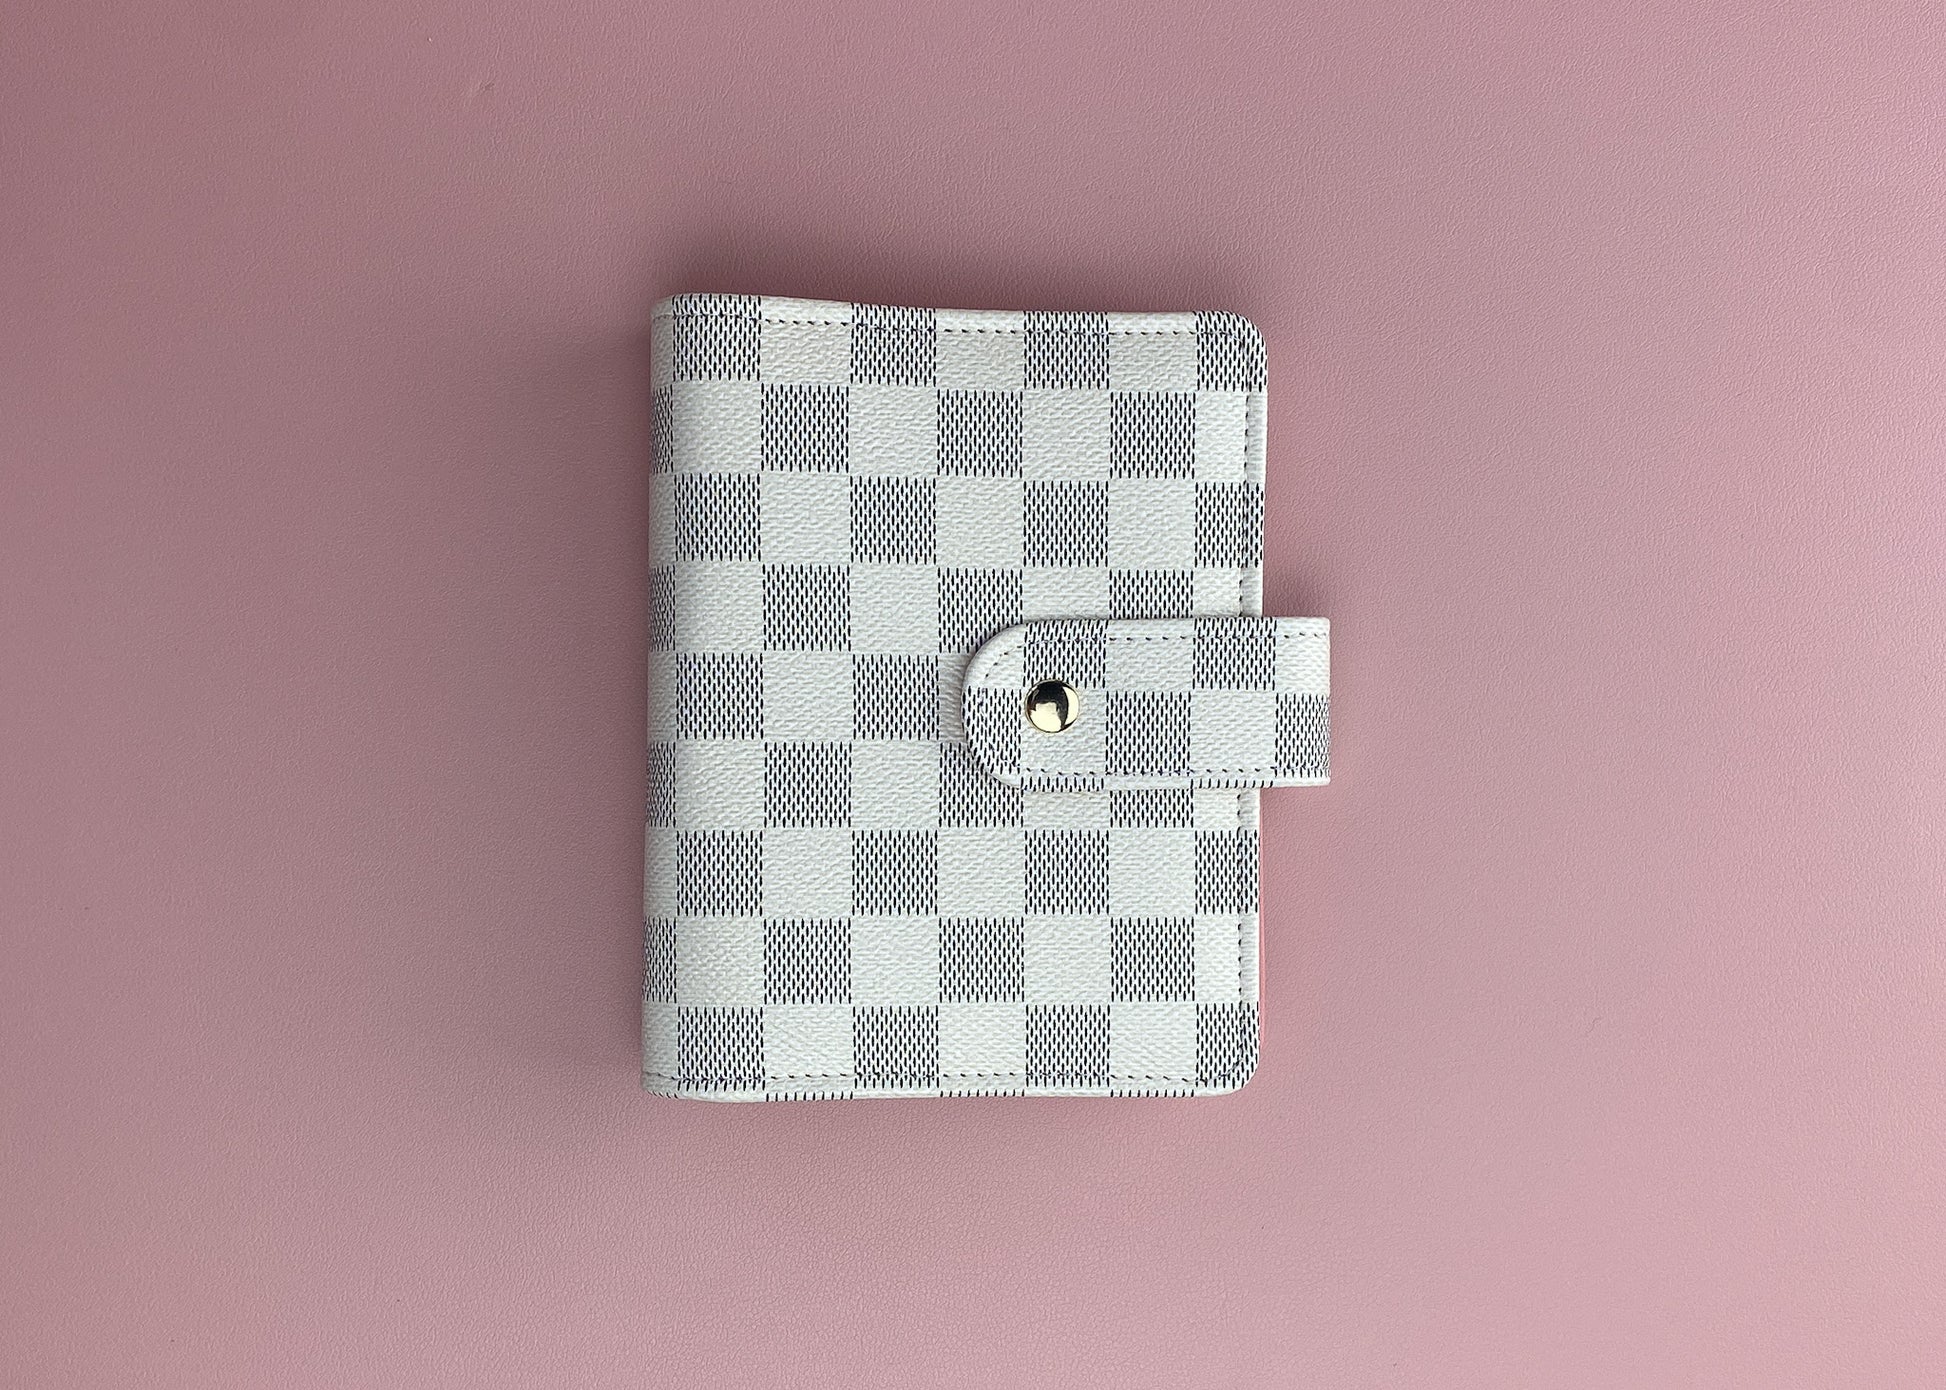 A7 Checkered Binder Bundle – Designs by Kountz